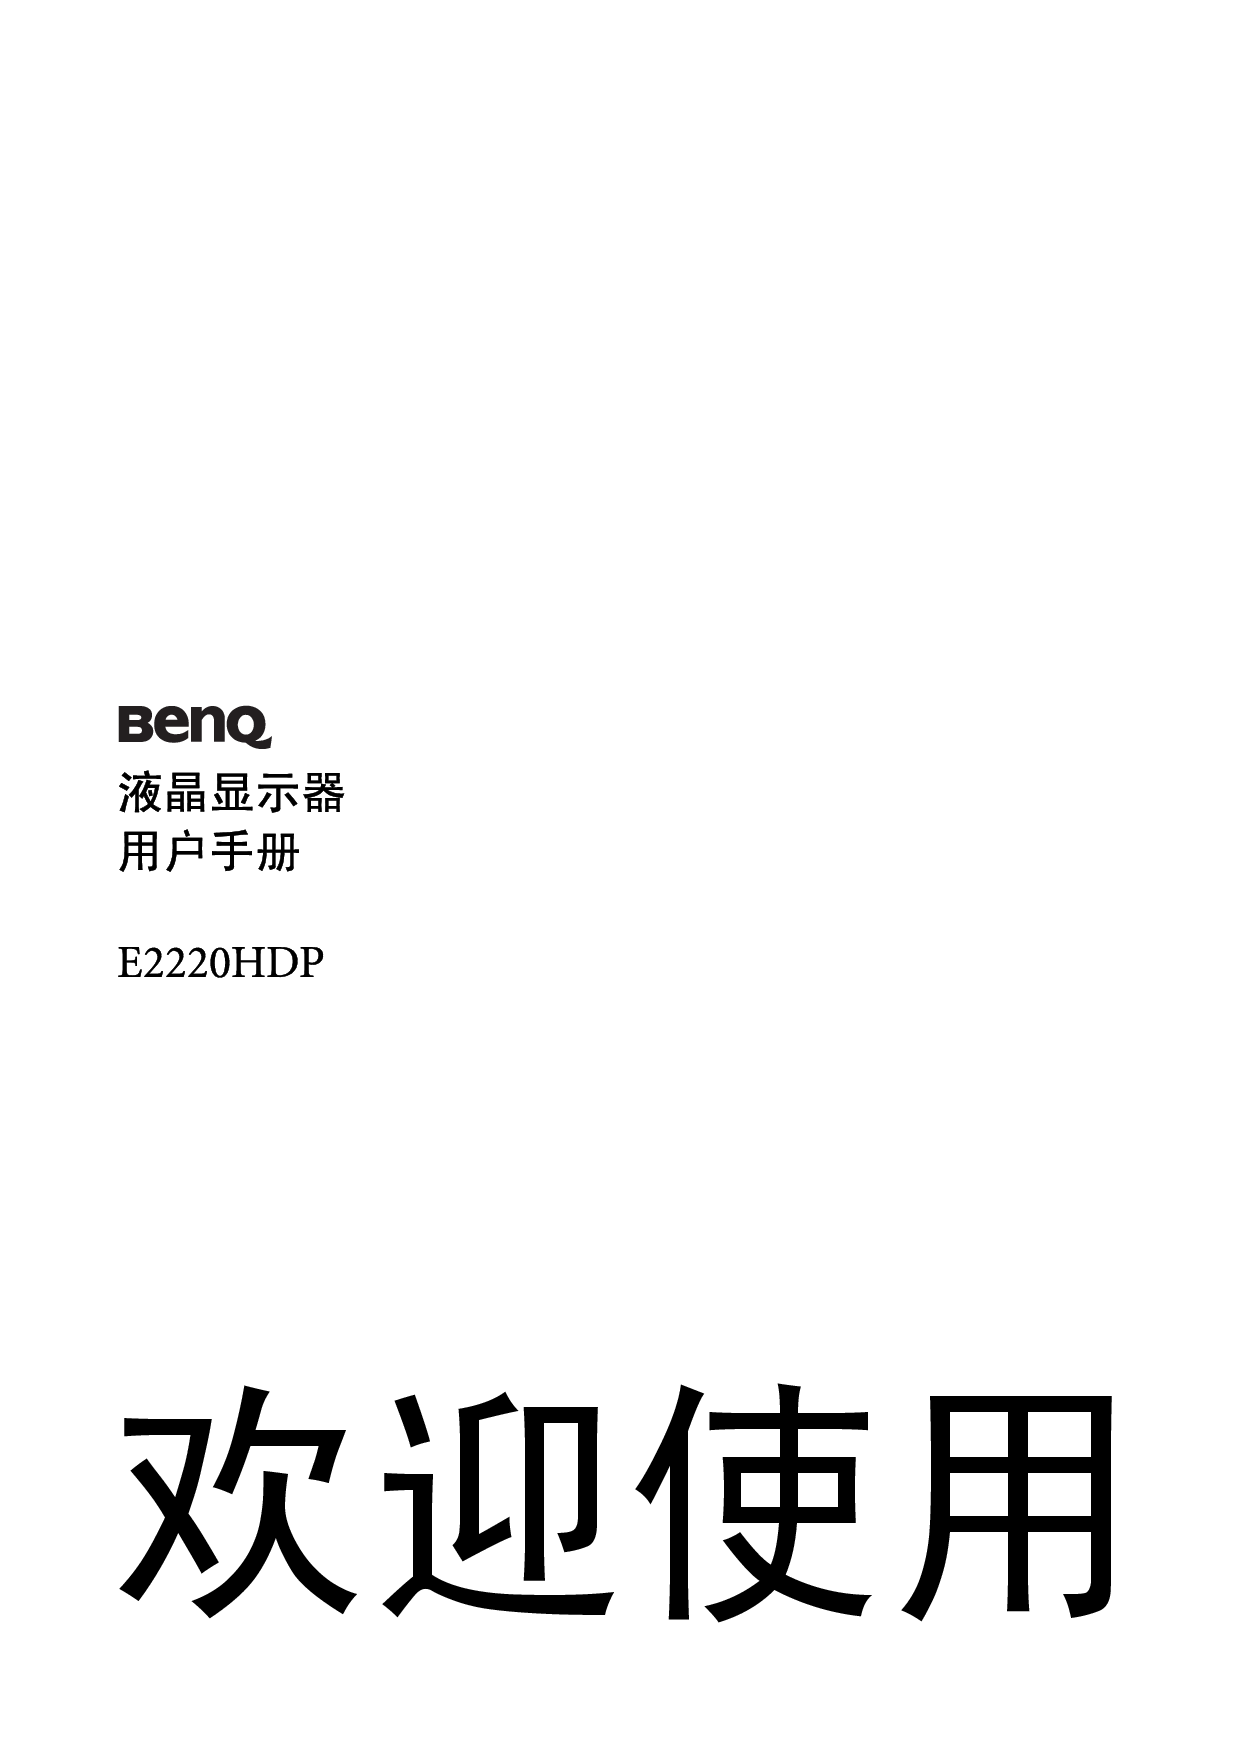 明基 Benq E2220HDP 使用手册 封面